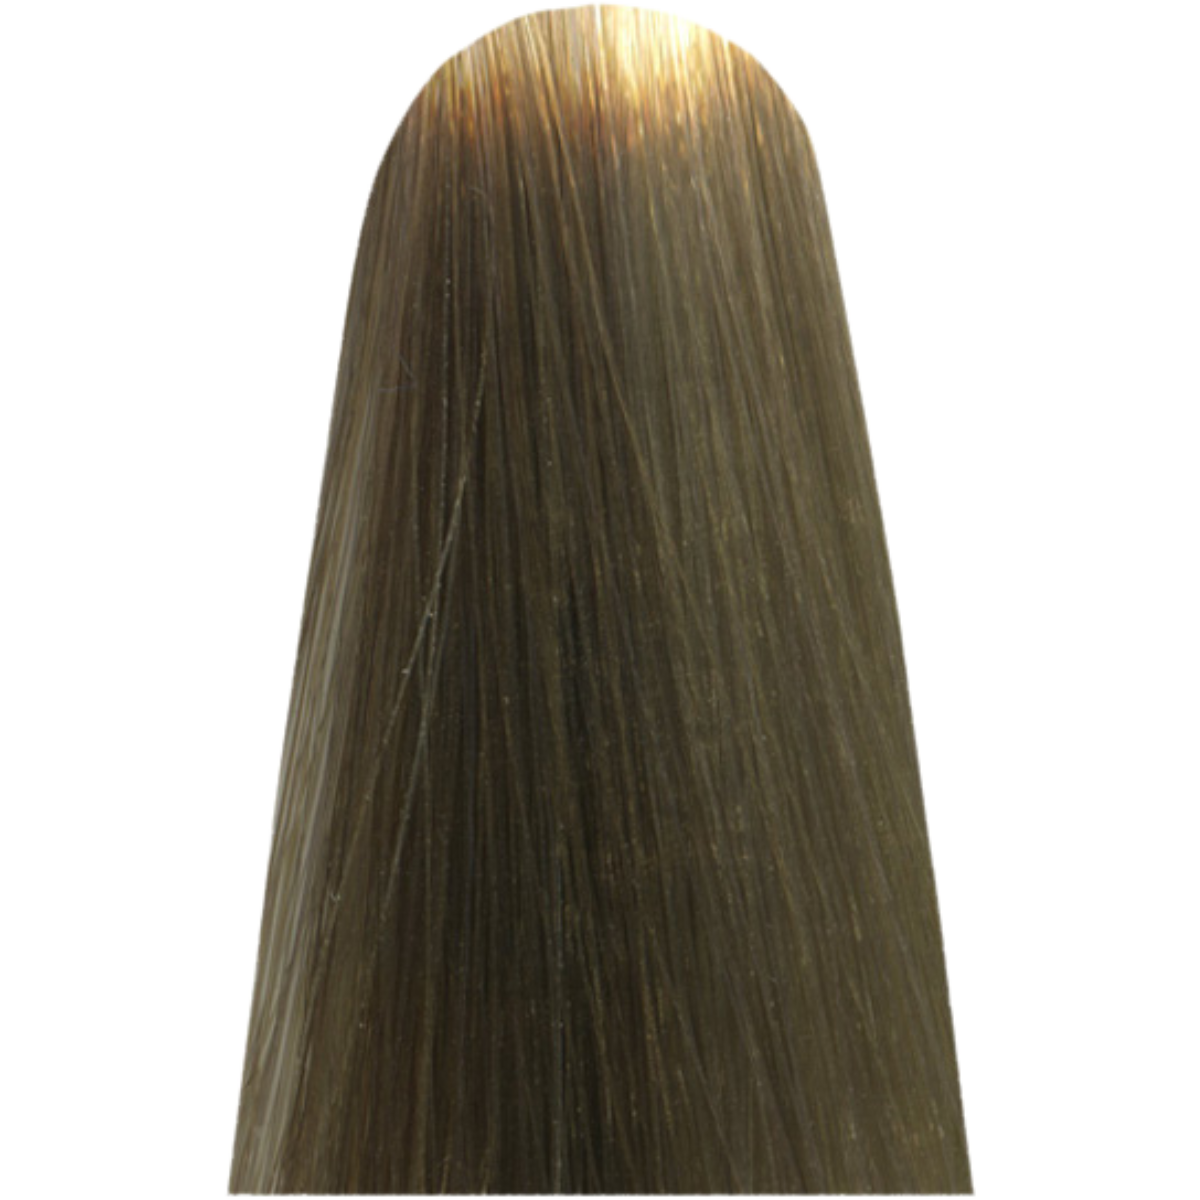 צבע שיער LIGHT.13 TAUPE LESS מג`ירל בוהק MAJIREL GLOW צבע לשיער לוריאל 50 גרם